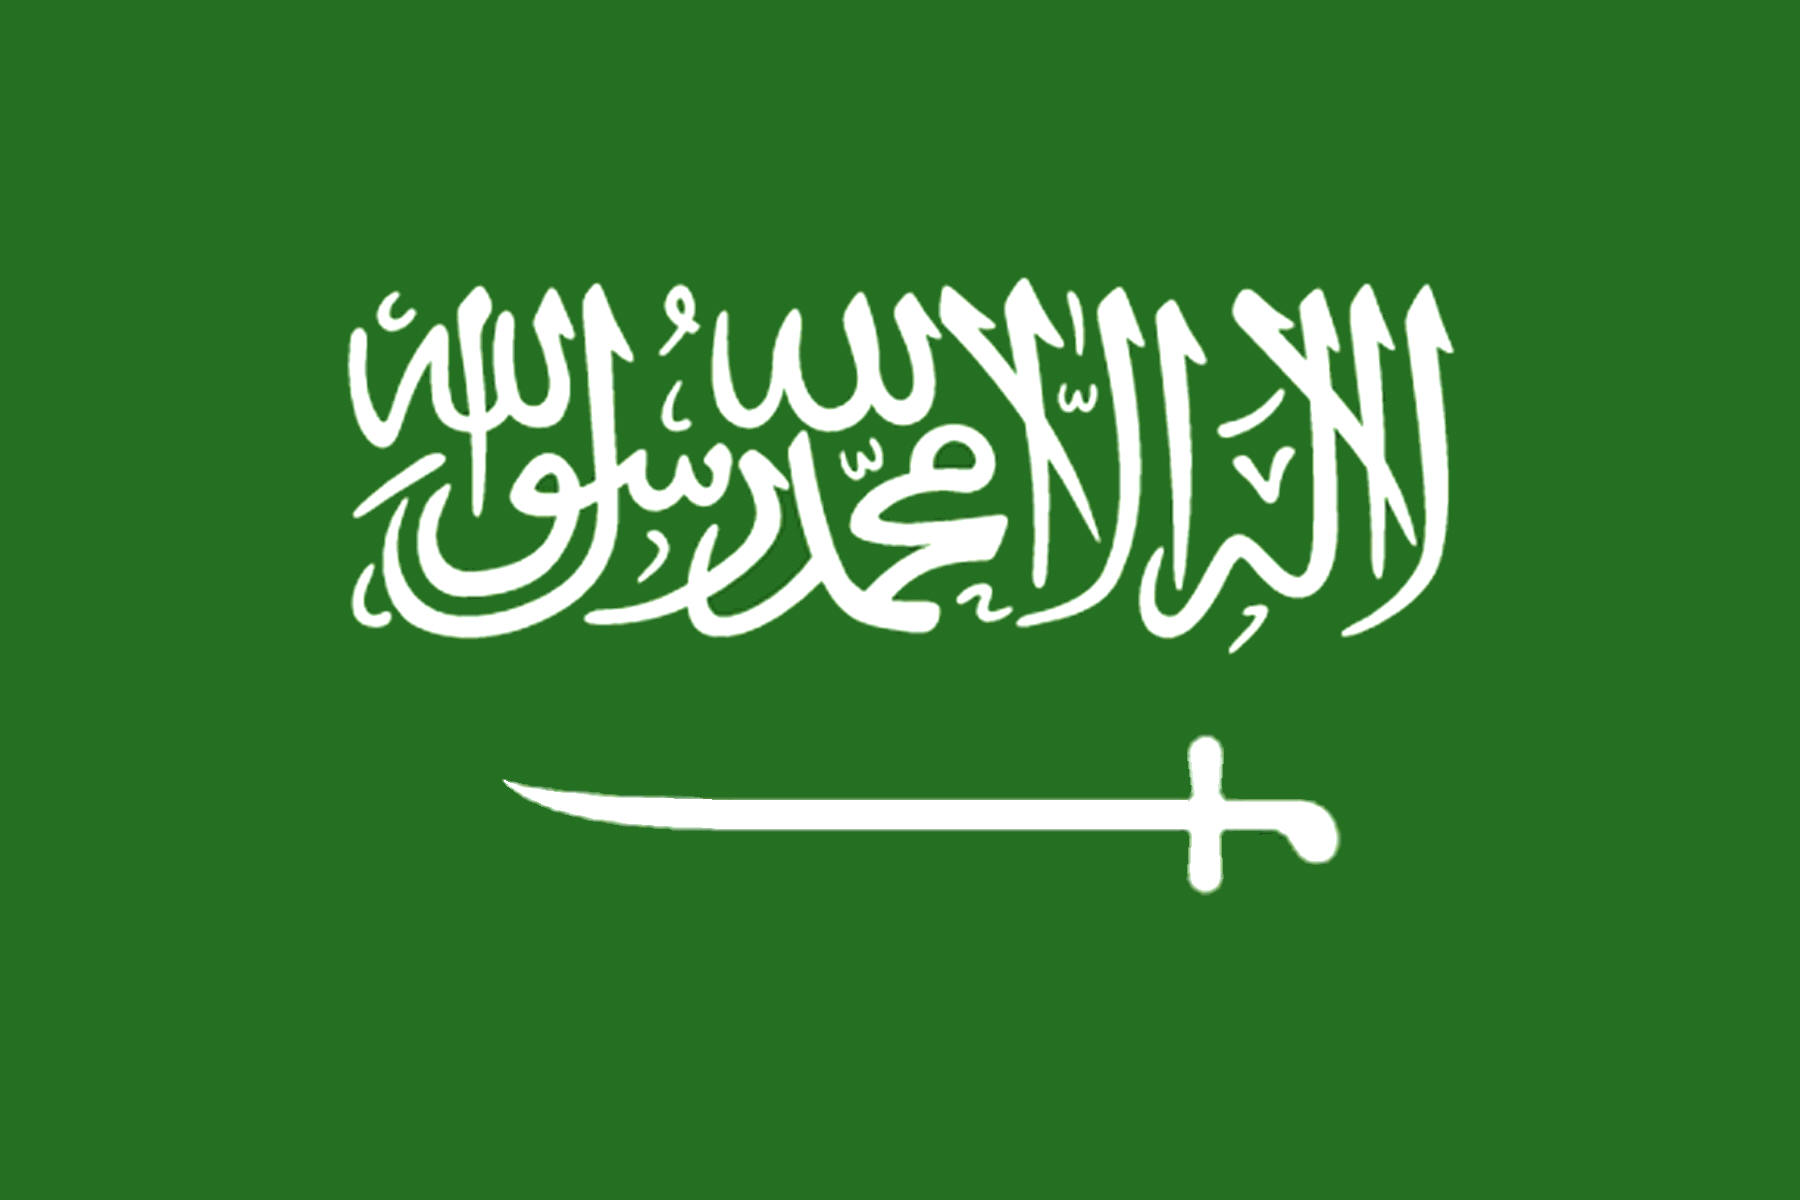 Saudi Arabia Wallpaper